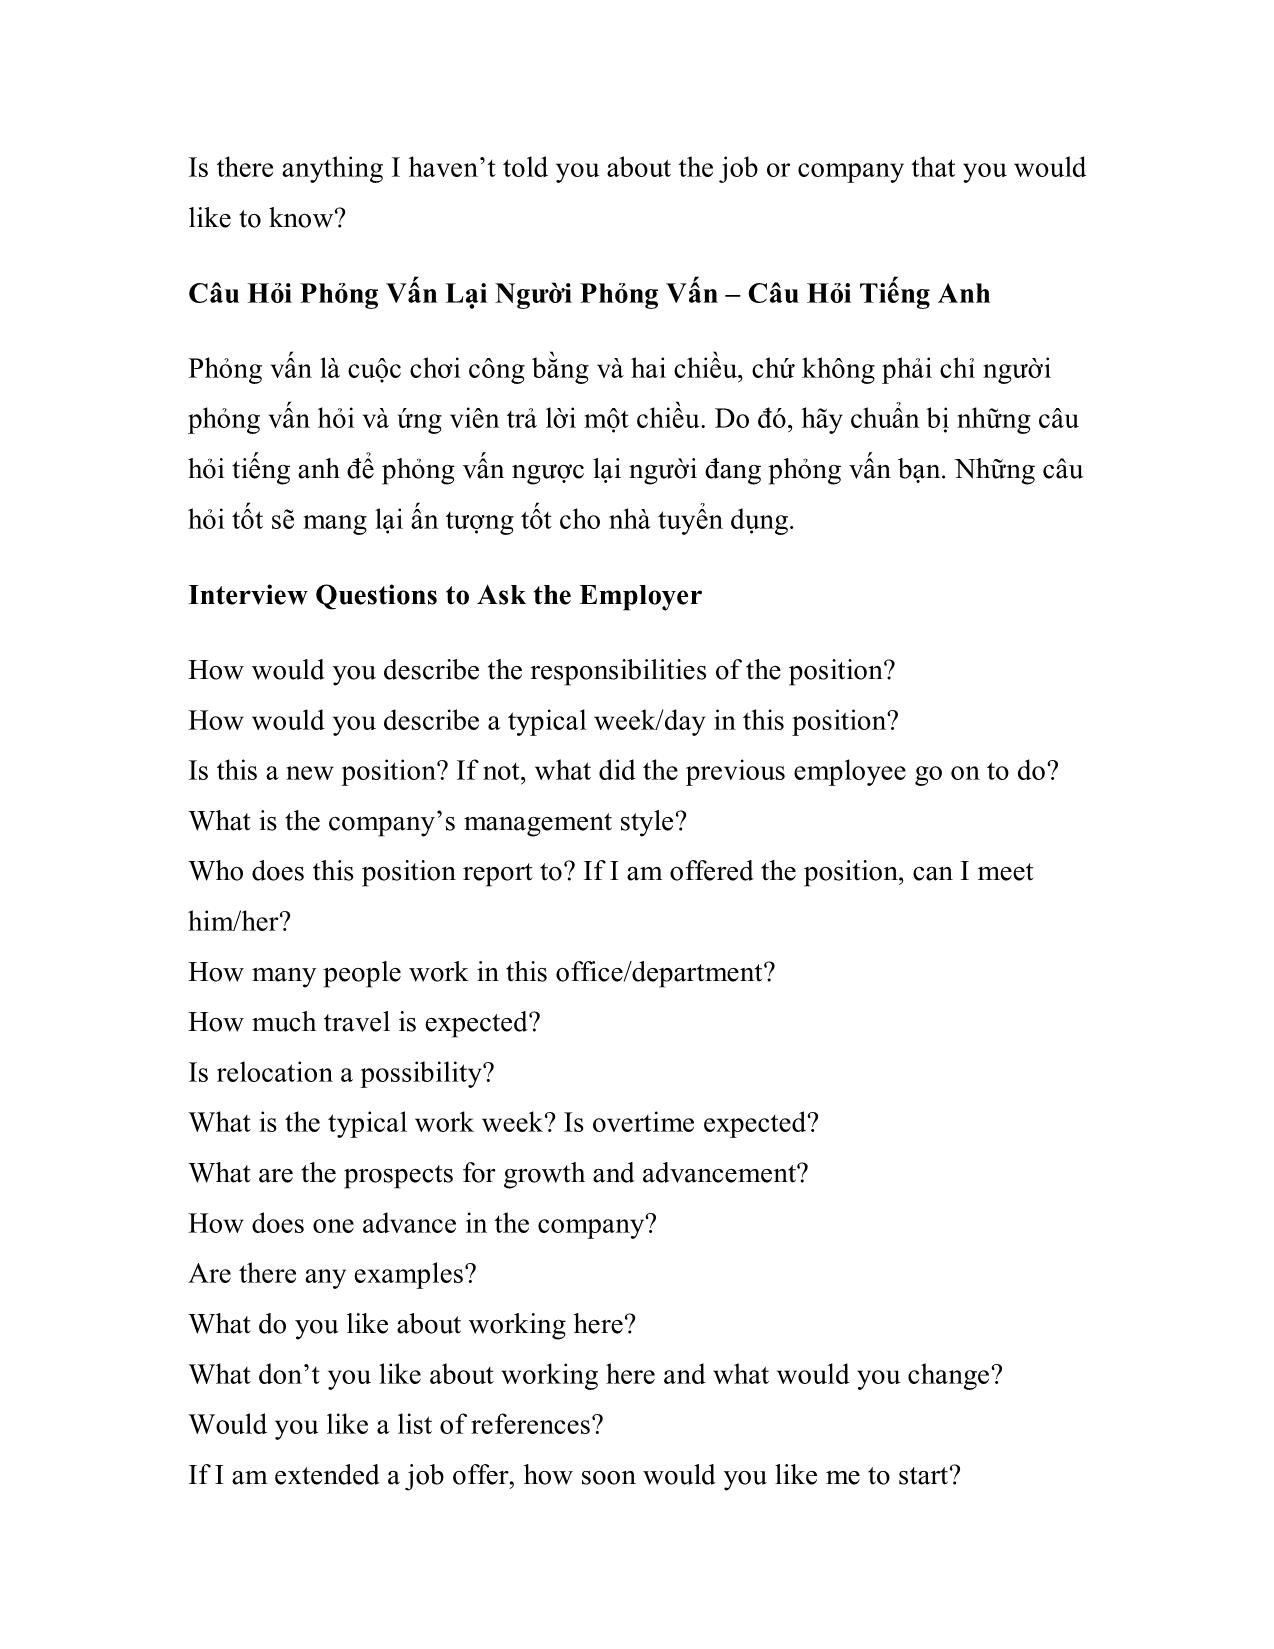 Câu hỏi phỏng vấn bằng tiếng Anh và trả lời trang 4